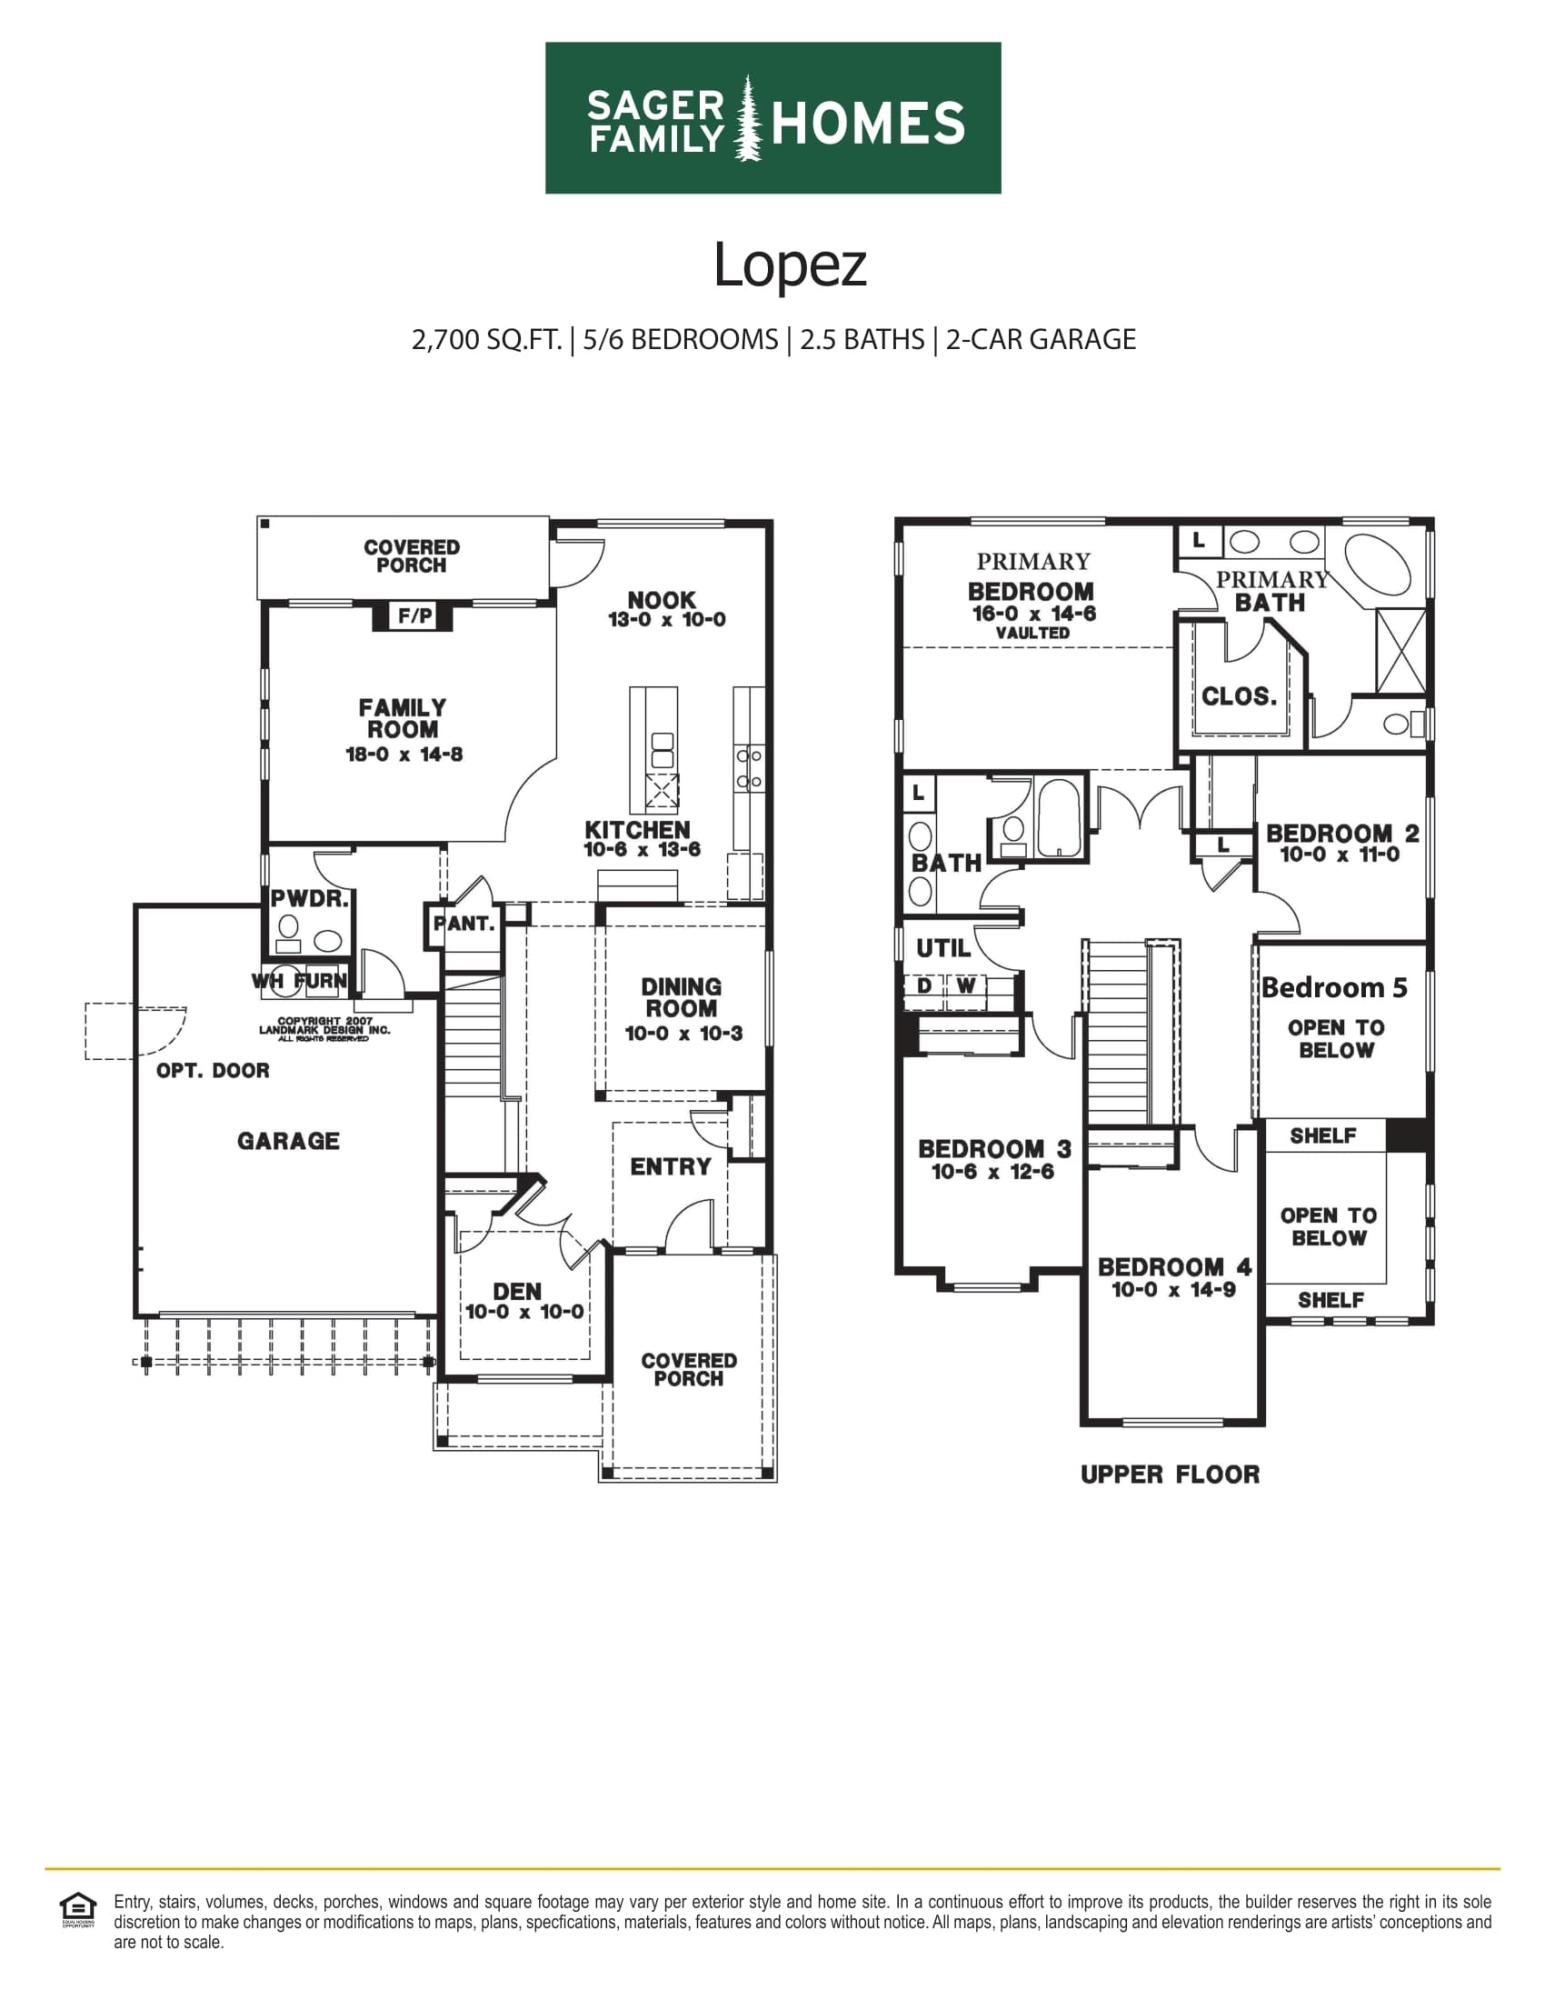 Lopez Floor Plan